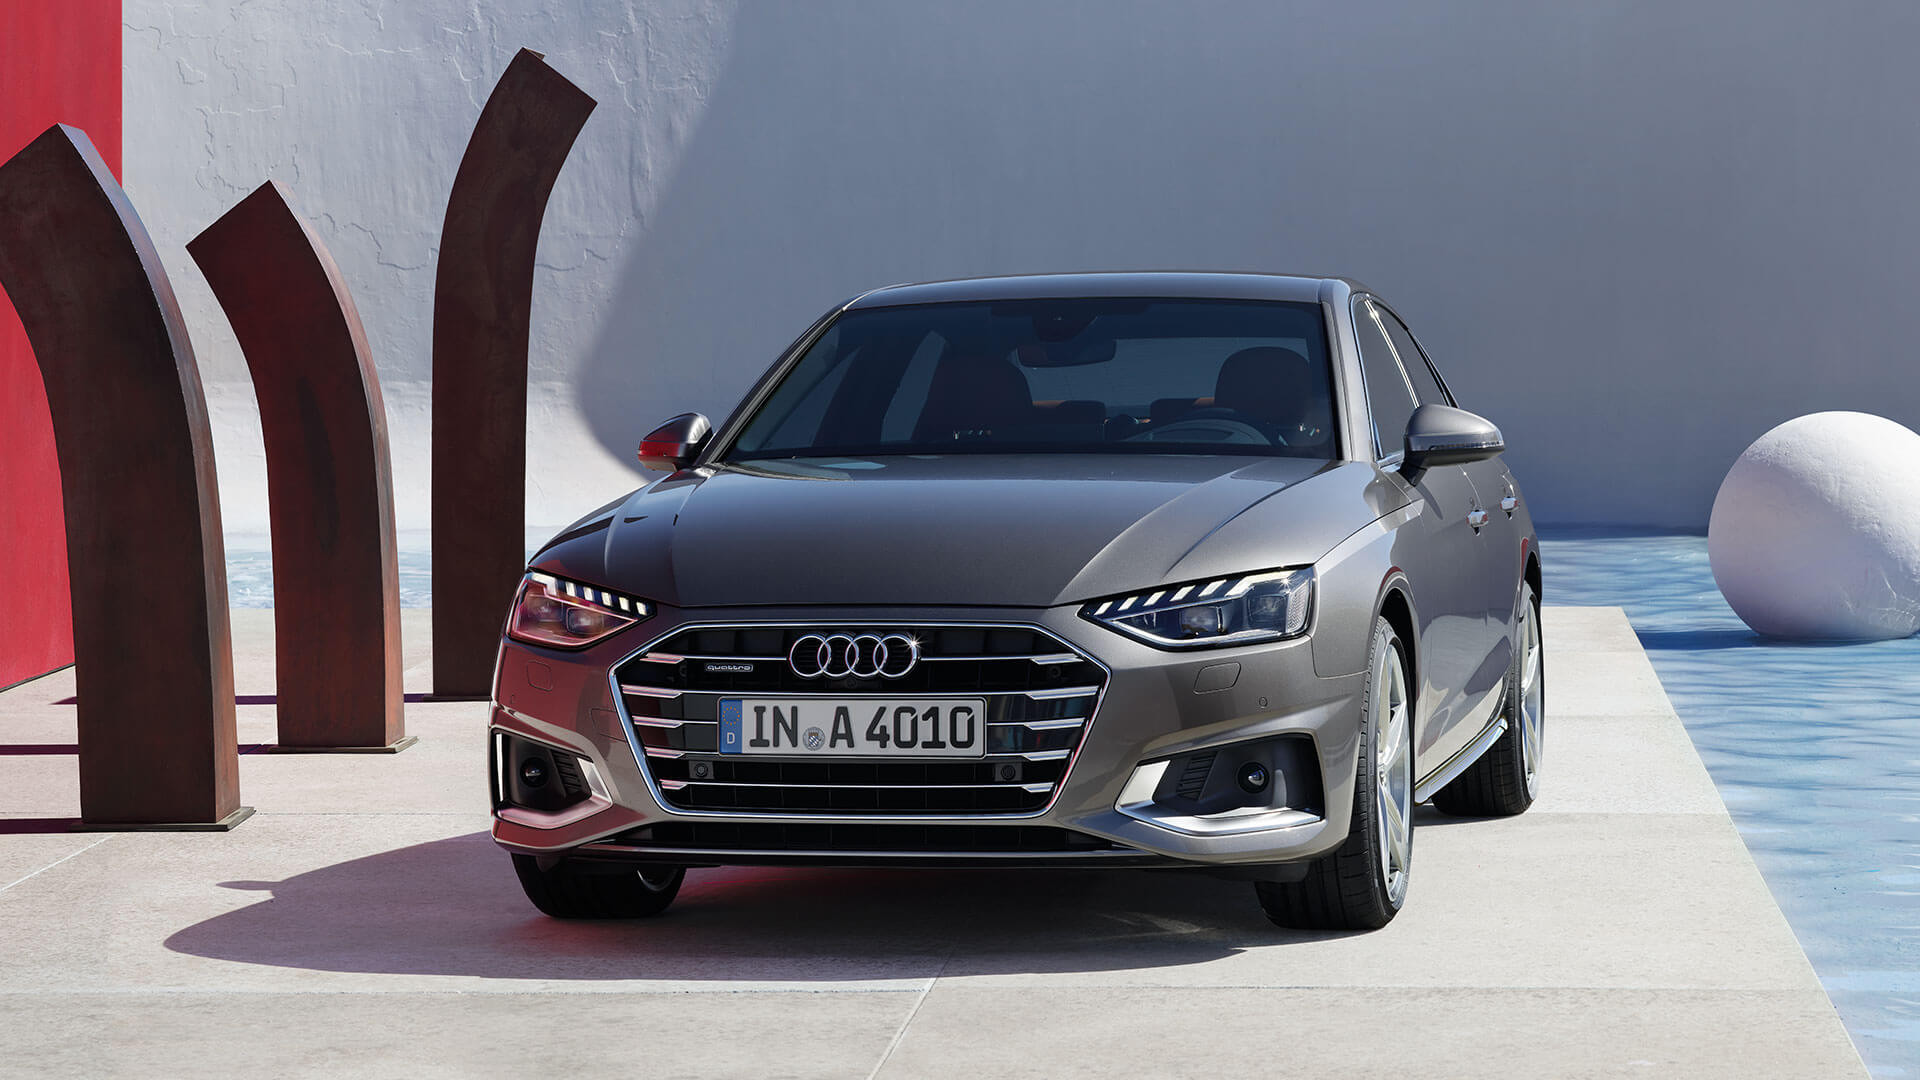 Audi A4 là dòng xe ô tô giá từ 1 tỷ đến 2 tỷ có động cơ mạnh mẽ và tiết kiệm nhiên liệu